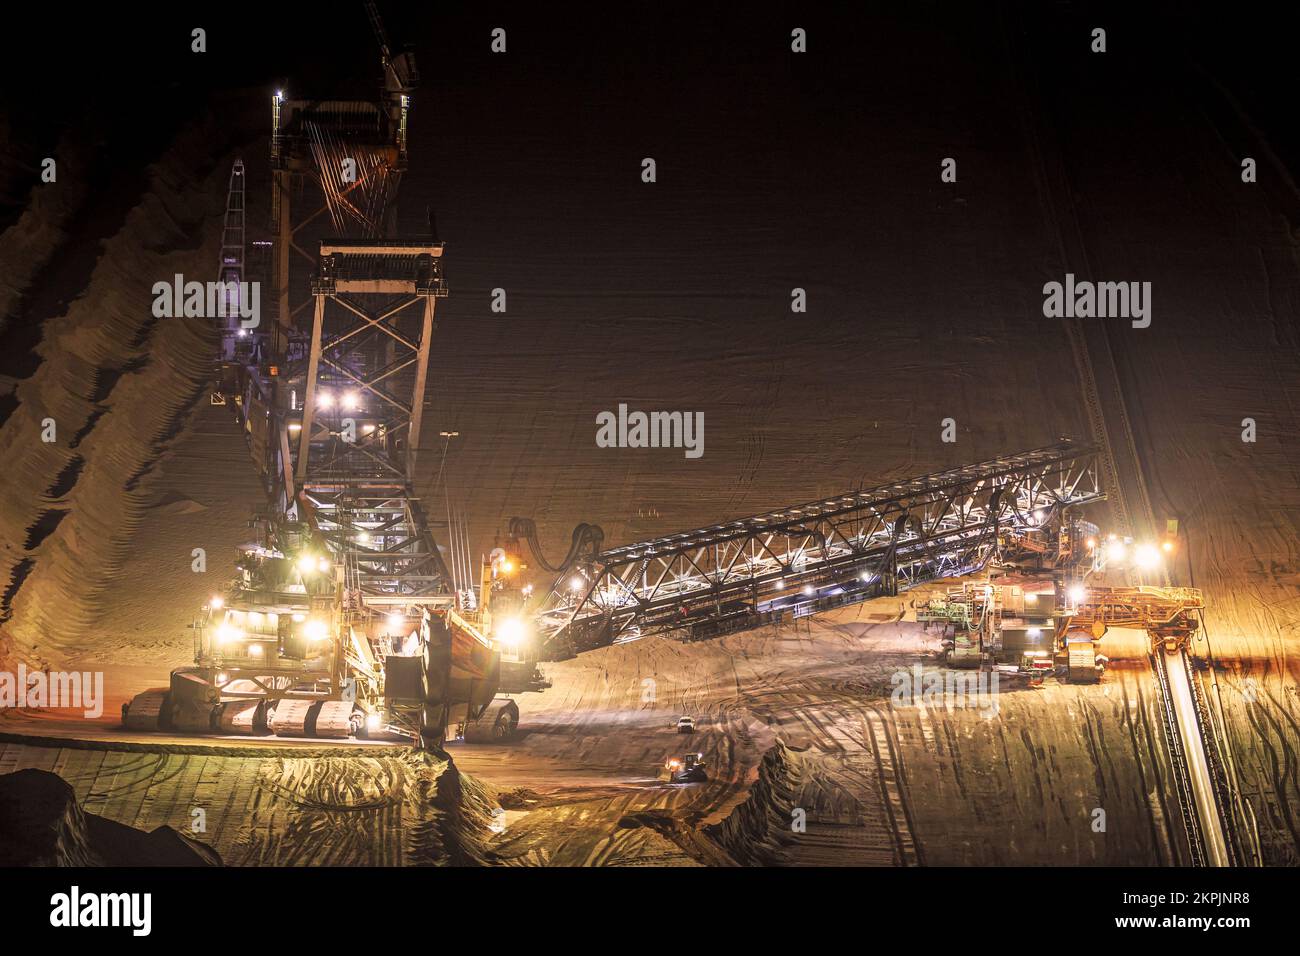 Attrezzature minerarie pesanti al lavoro in una miniera a cielo aperto al crepuscolo. Foto Stock